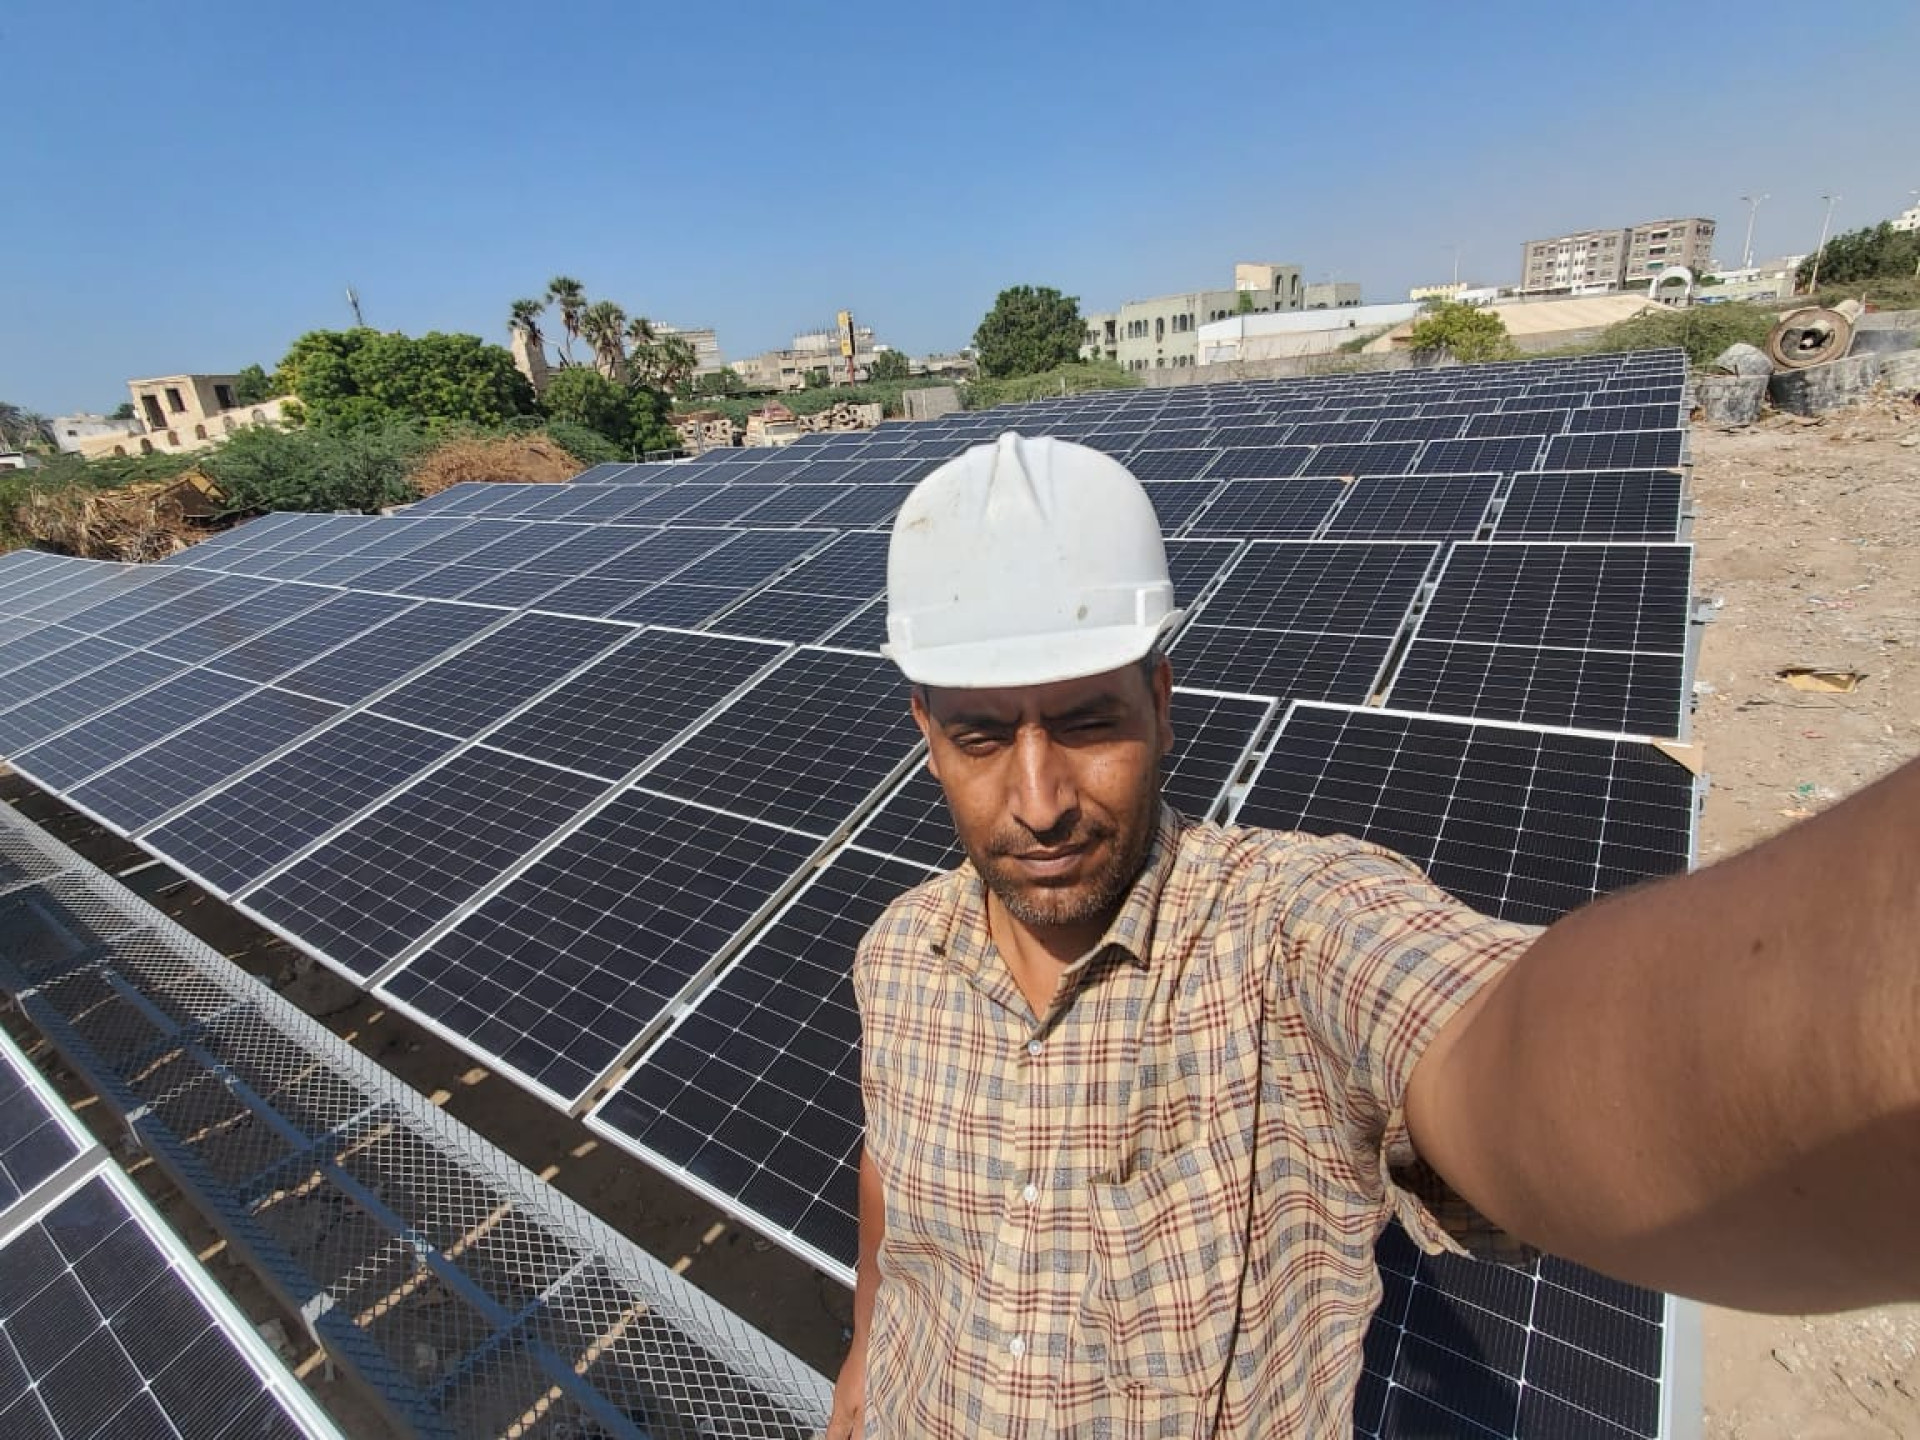 توريد وتركيب وتشغيل نظام طاقة شمسية لتشغيل محطة تحلية مياه تابعة للمؤسسة العامة للمياه بقدرة 100 كيلو وات وإنتاجية 30 ألف لتر الحديدة اليمن